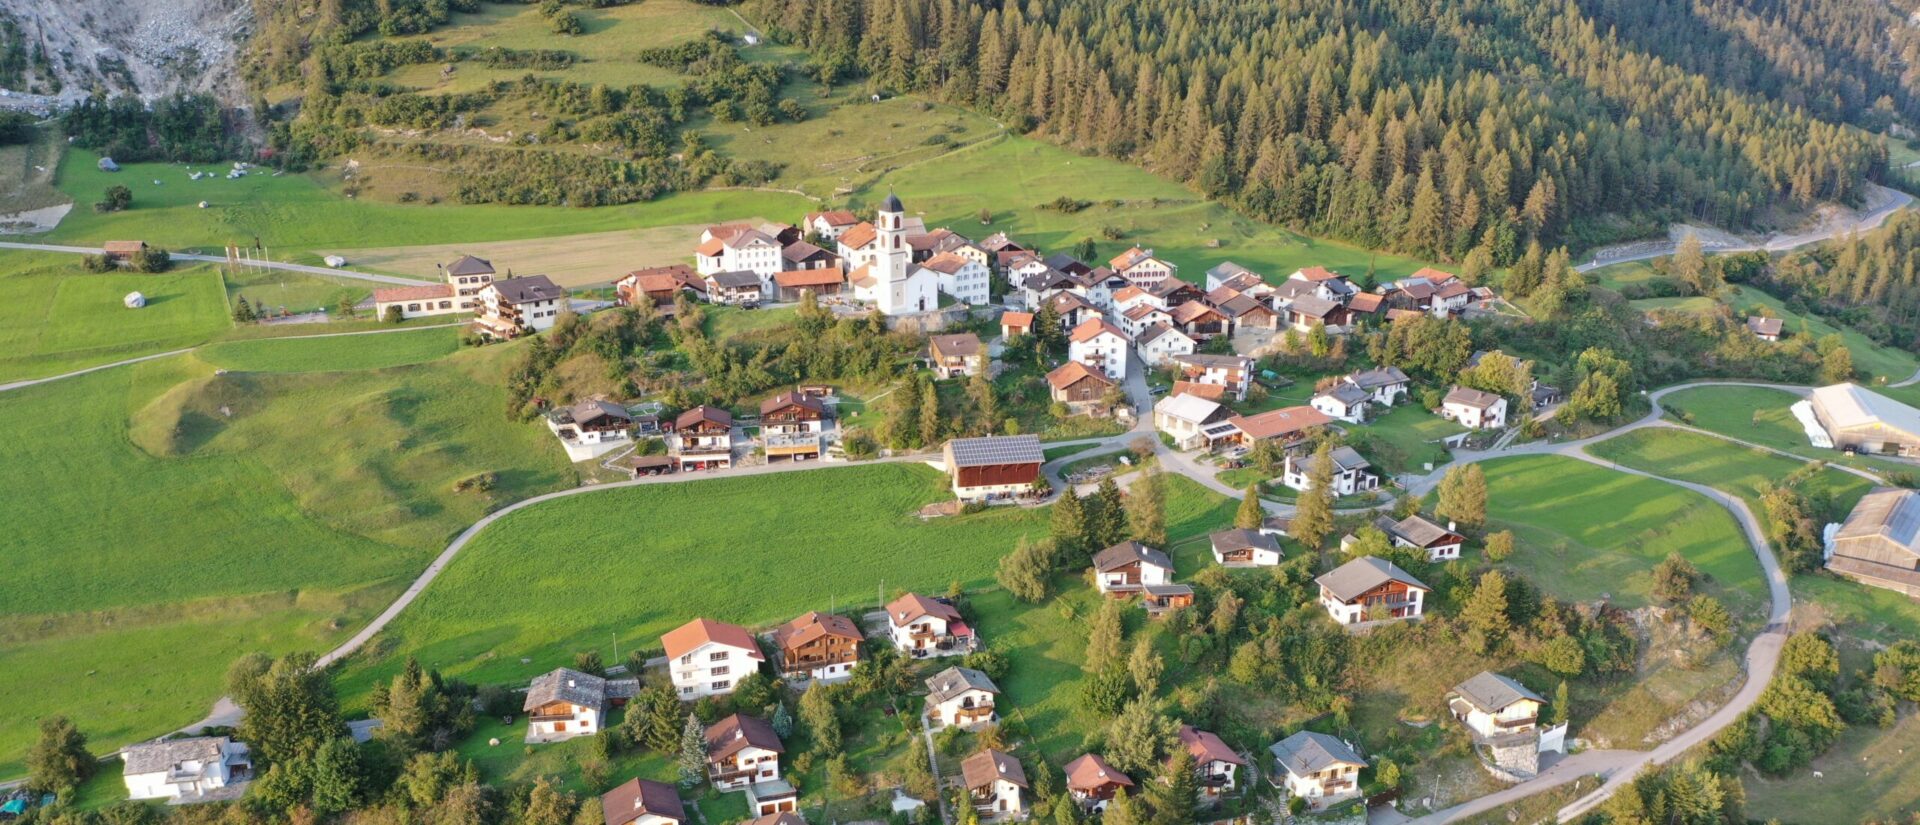 La situation géologique s'est stabilisée dans la zone du village de Brienz (GR) | © Wikimedia/Orlando Mugwyler